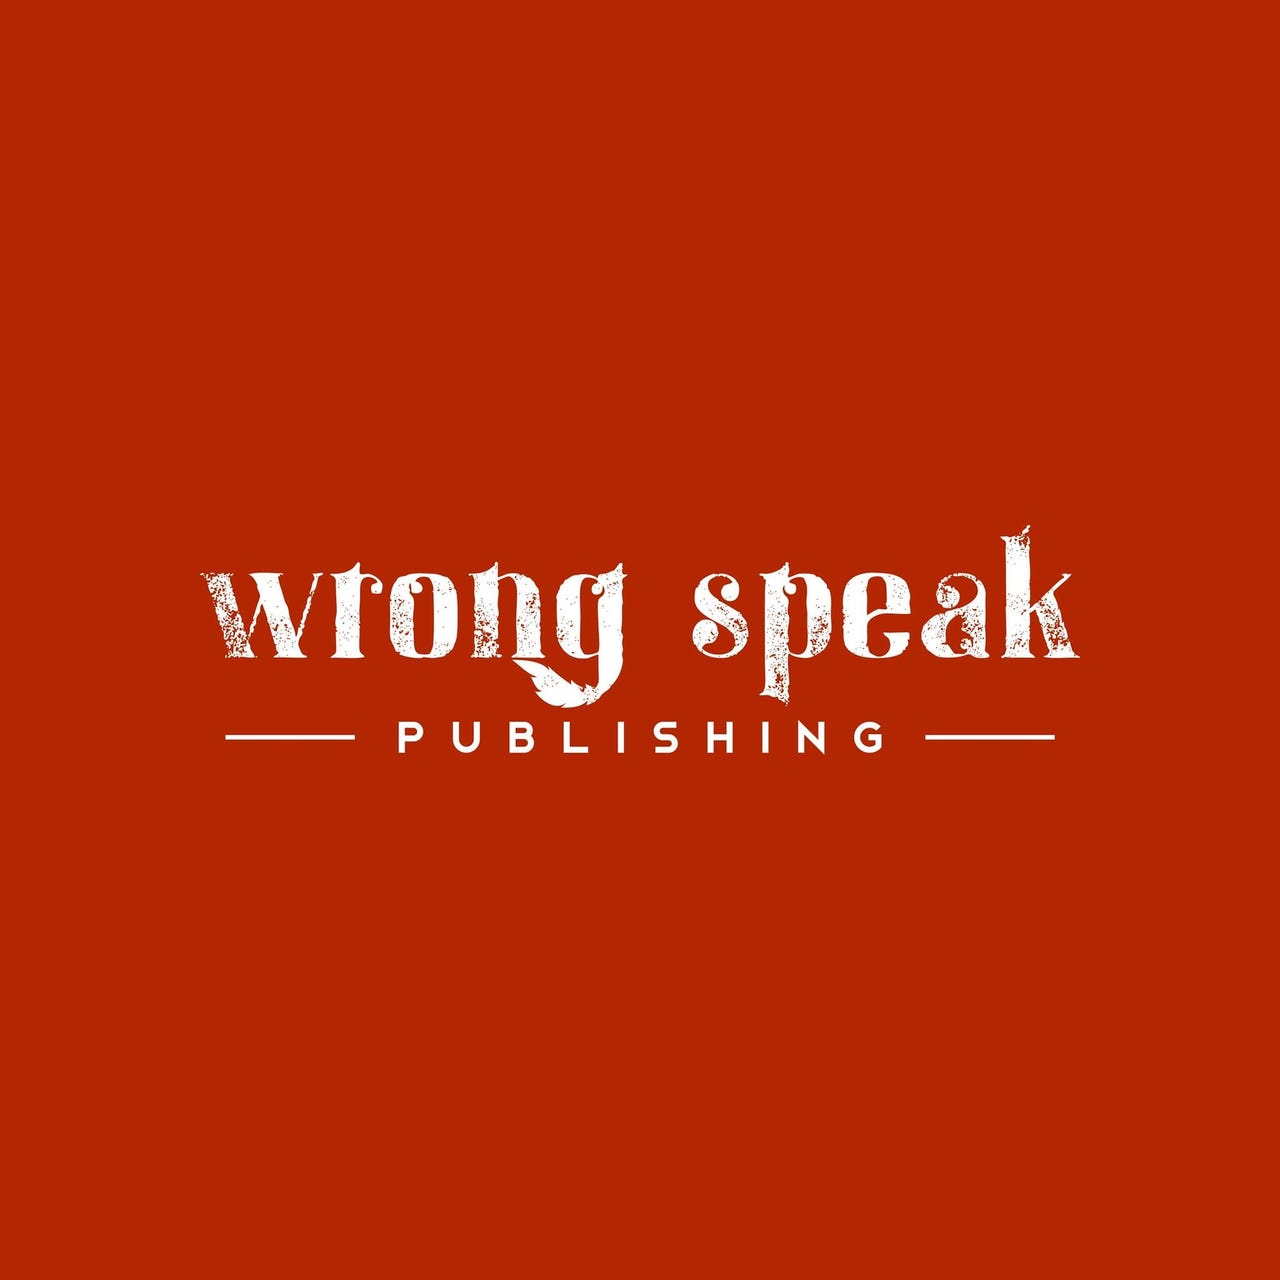 Artwork for Wrong Speak Publishing